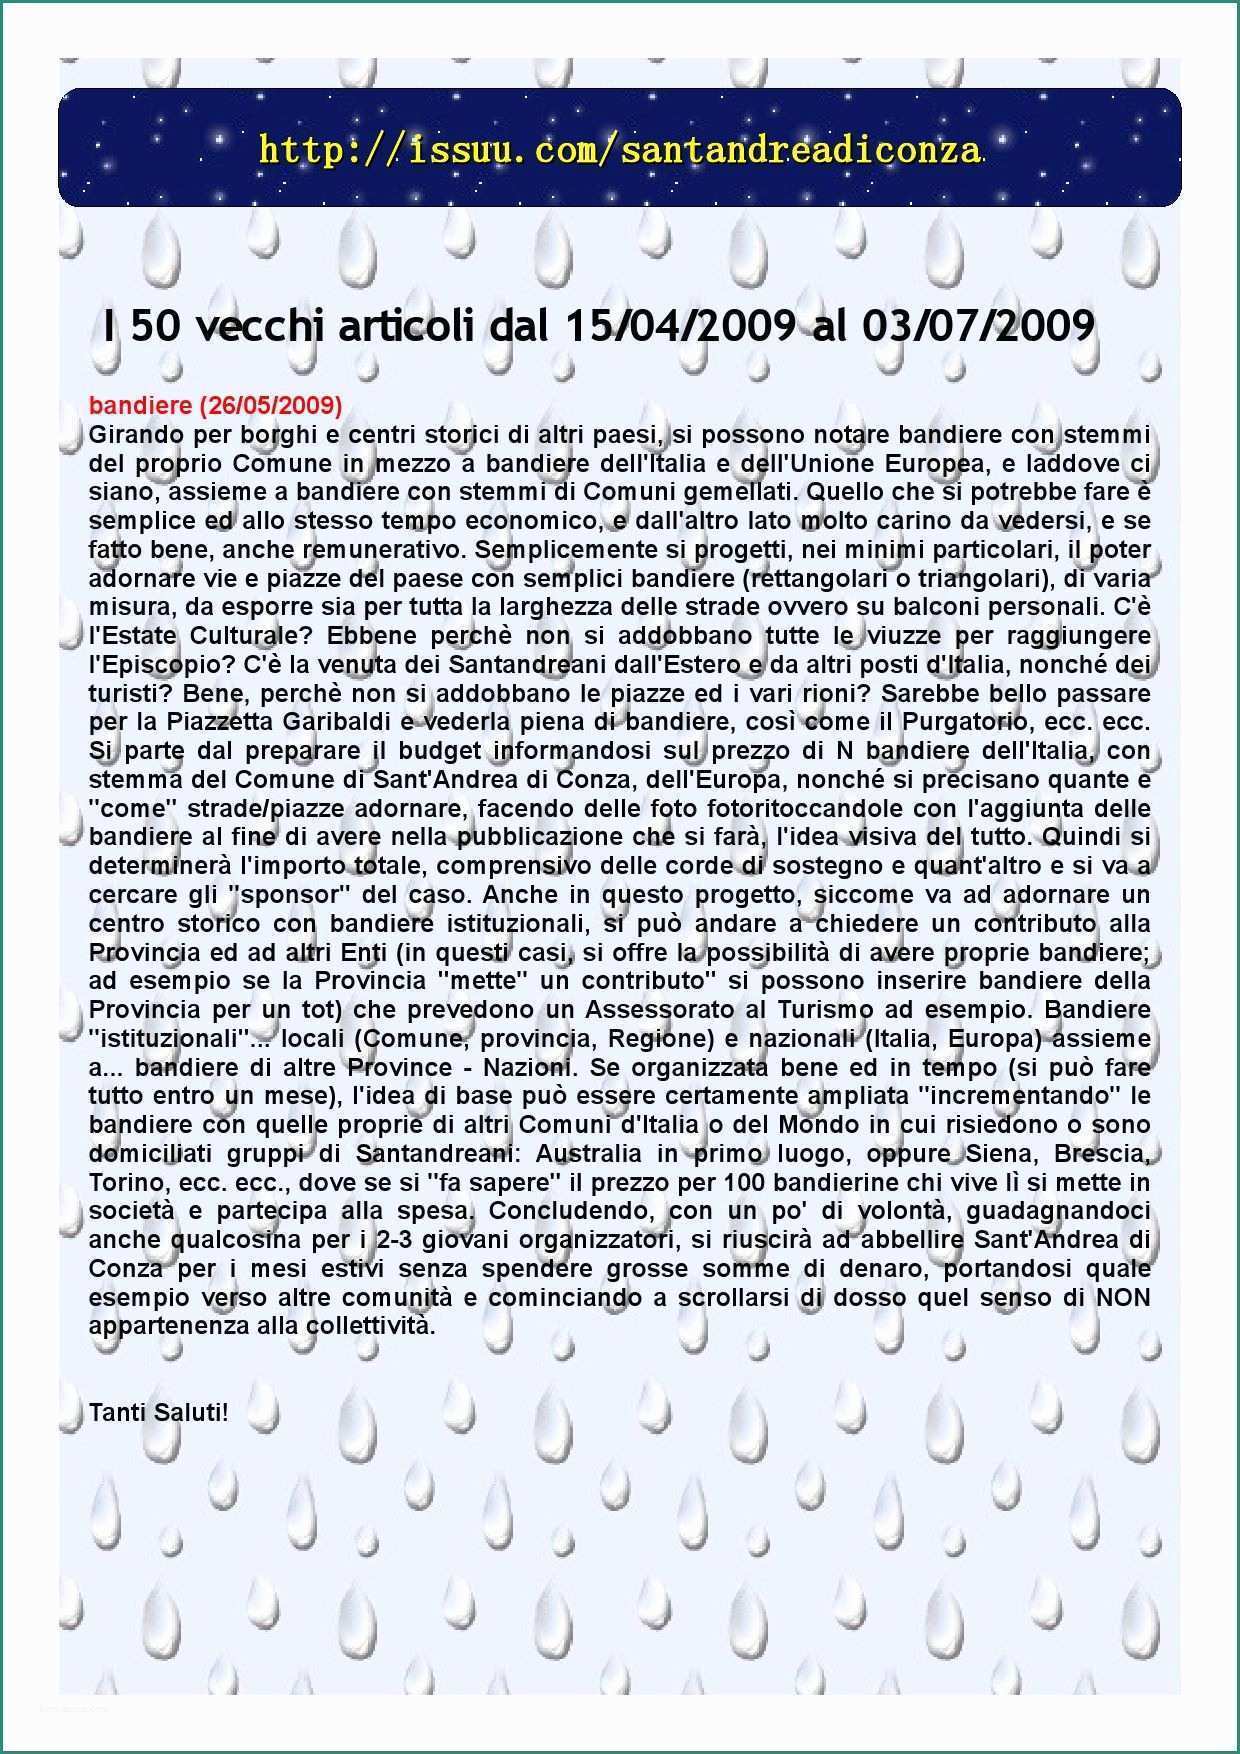 Scaffalature Metalliche Leroy Merlin E Articoli Da 22 A 50 by Nicolino tobia issuu